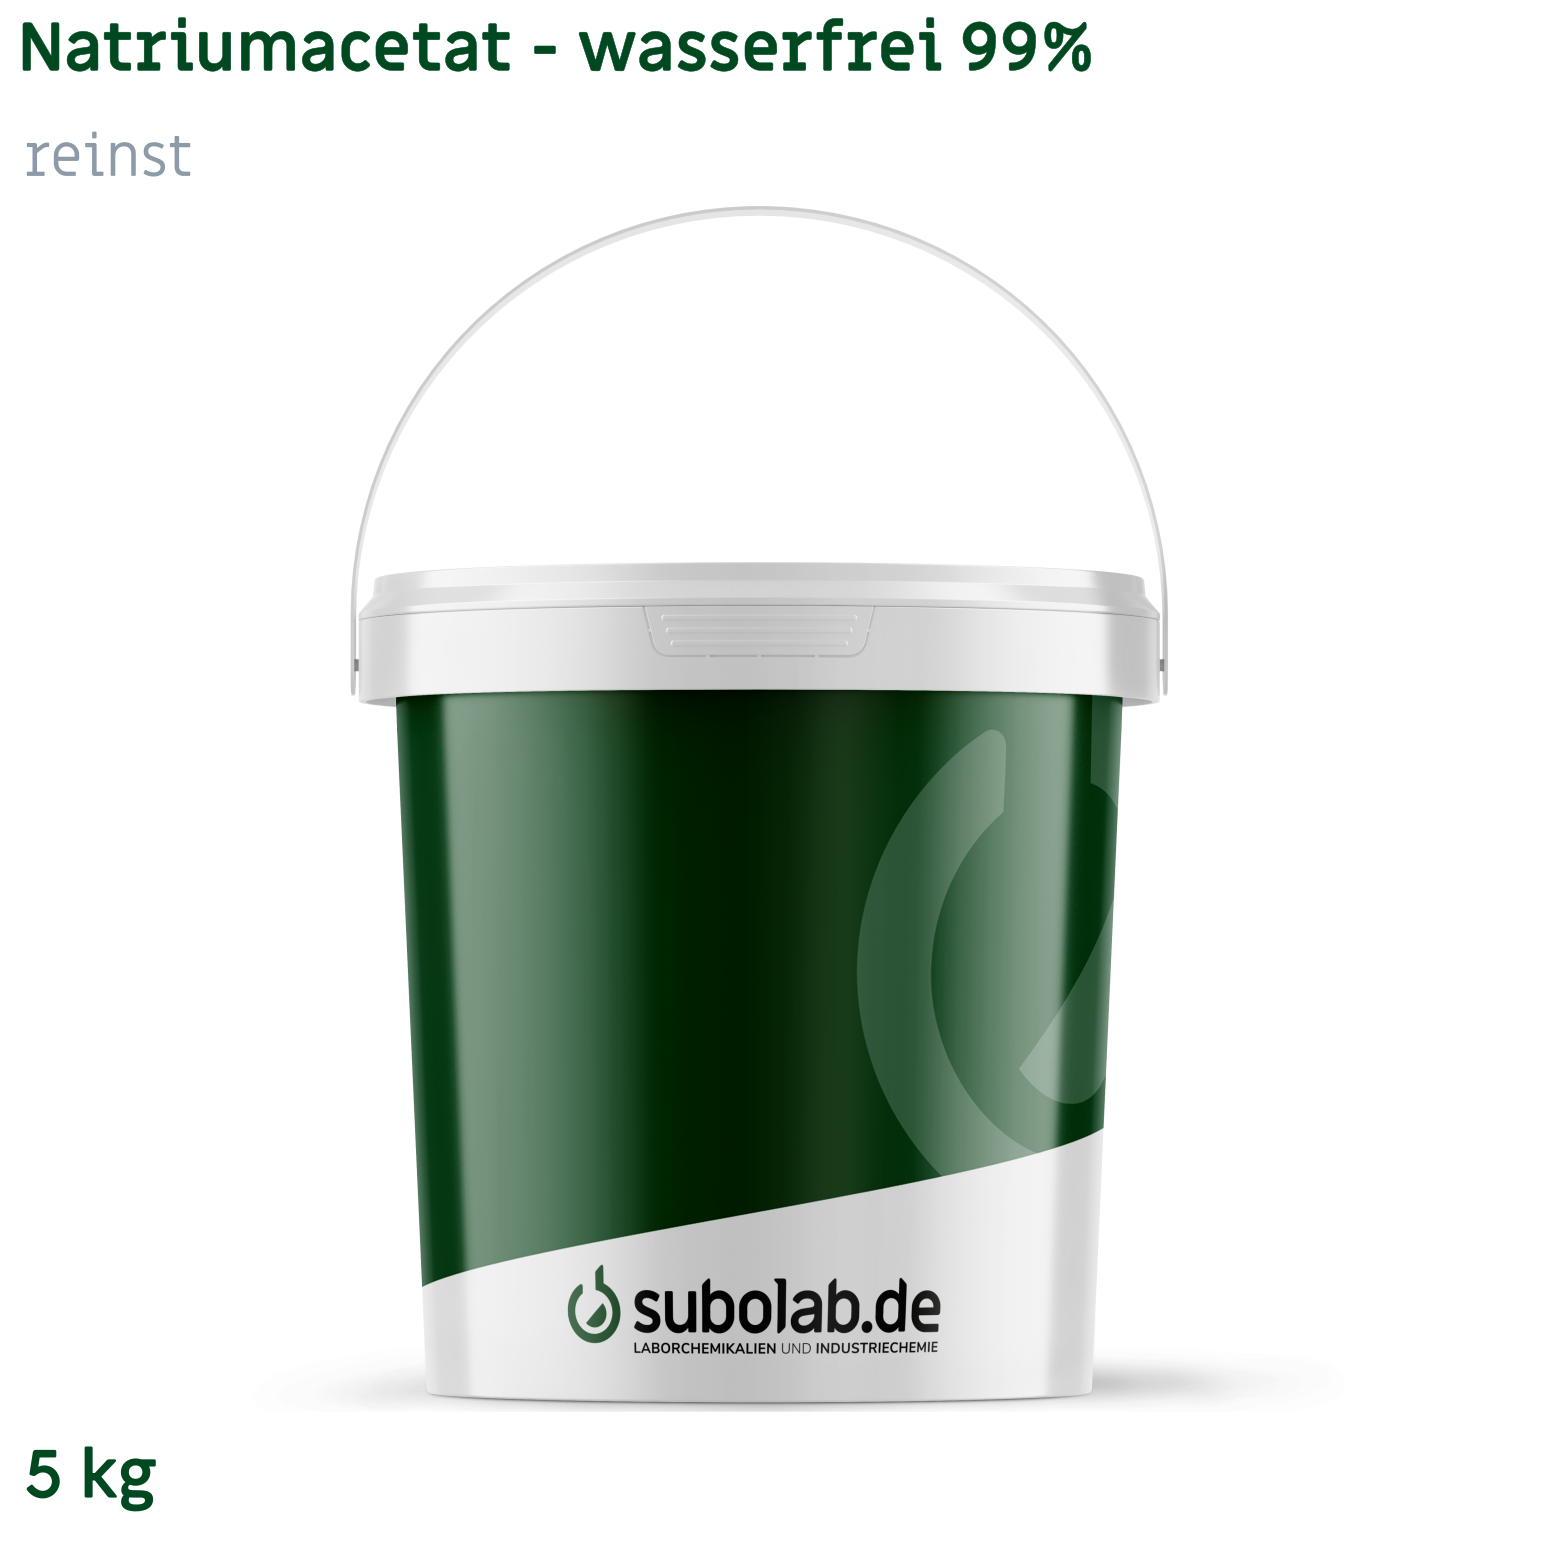 Bild von Natriumacetat - wasserfrei 99% reinst (5 kg)